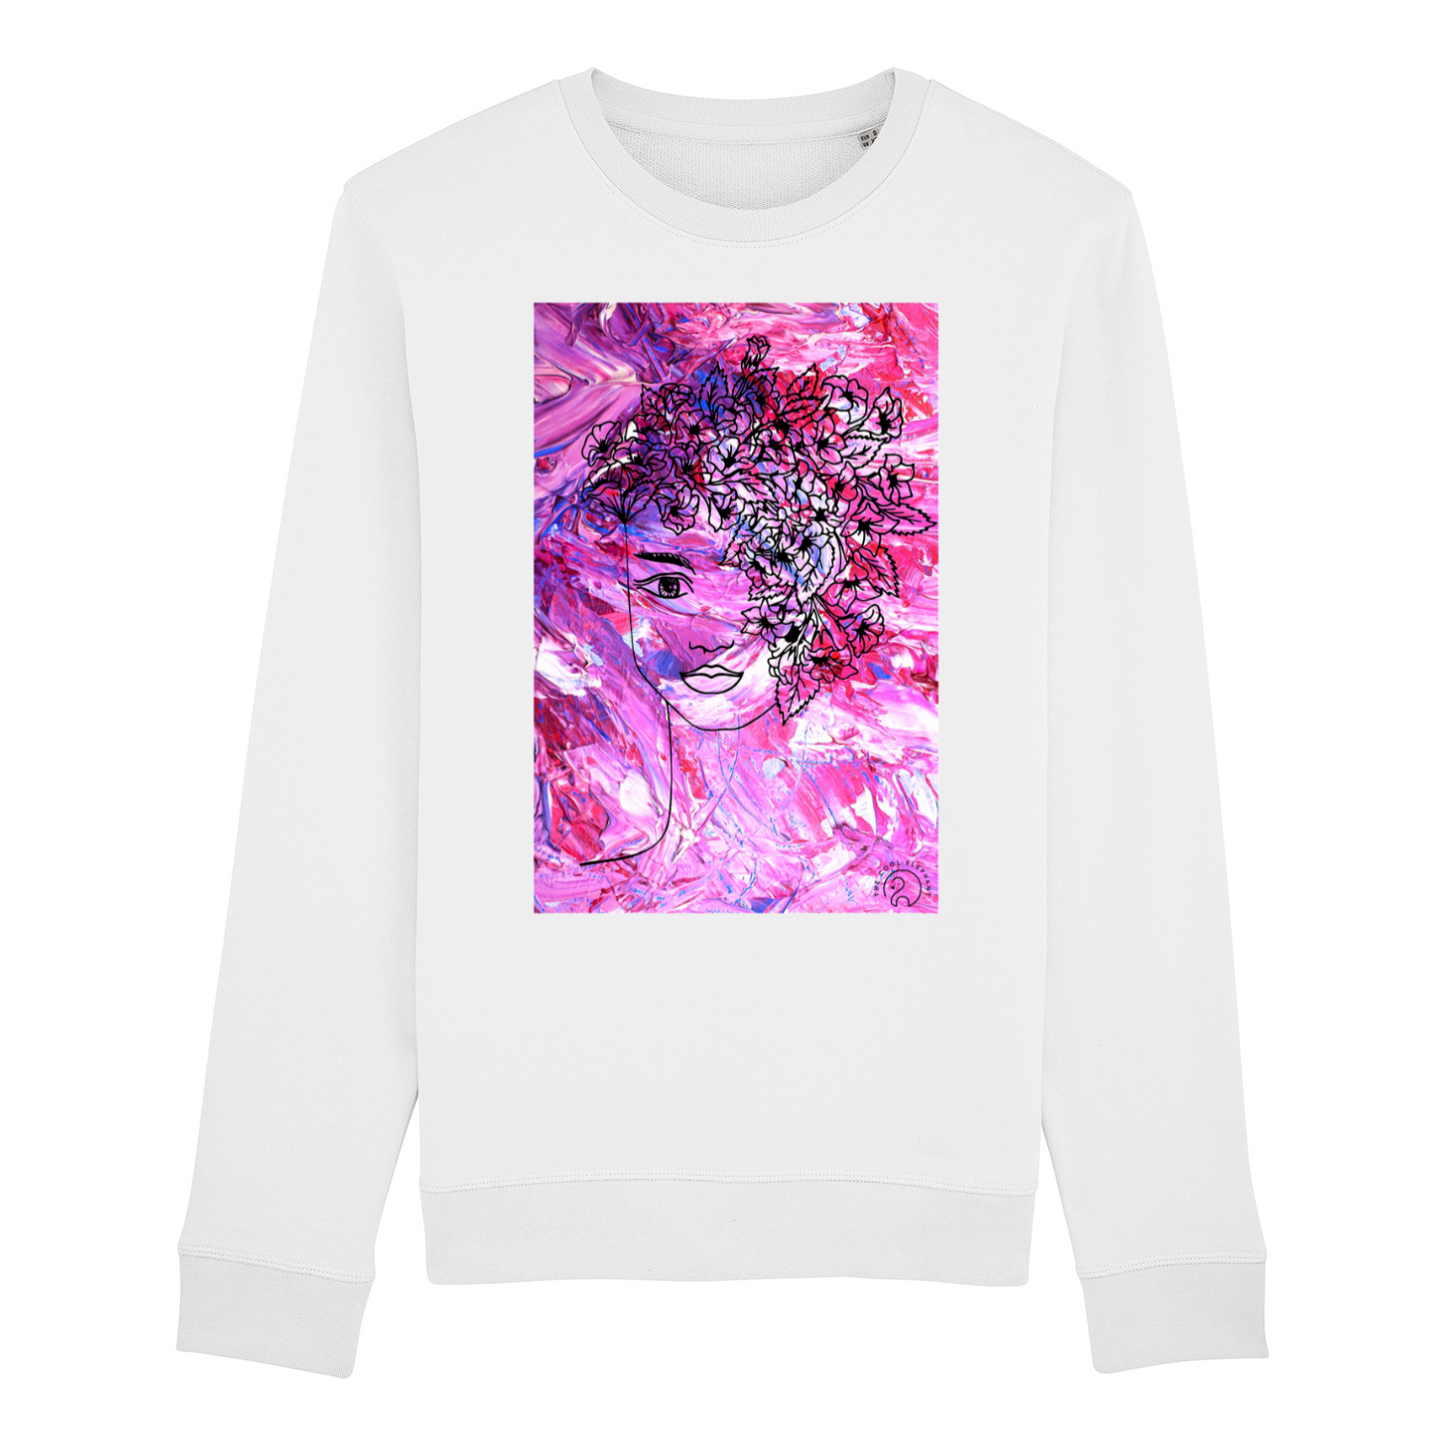 Sweatshirt "Flower Girl"